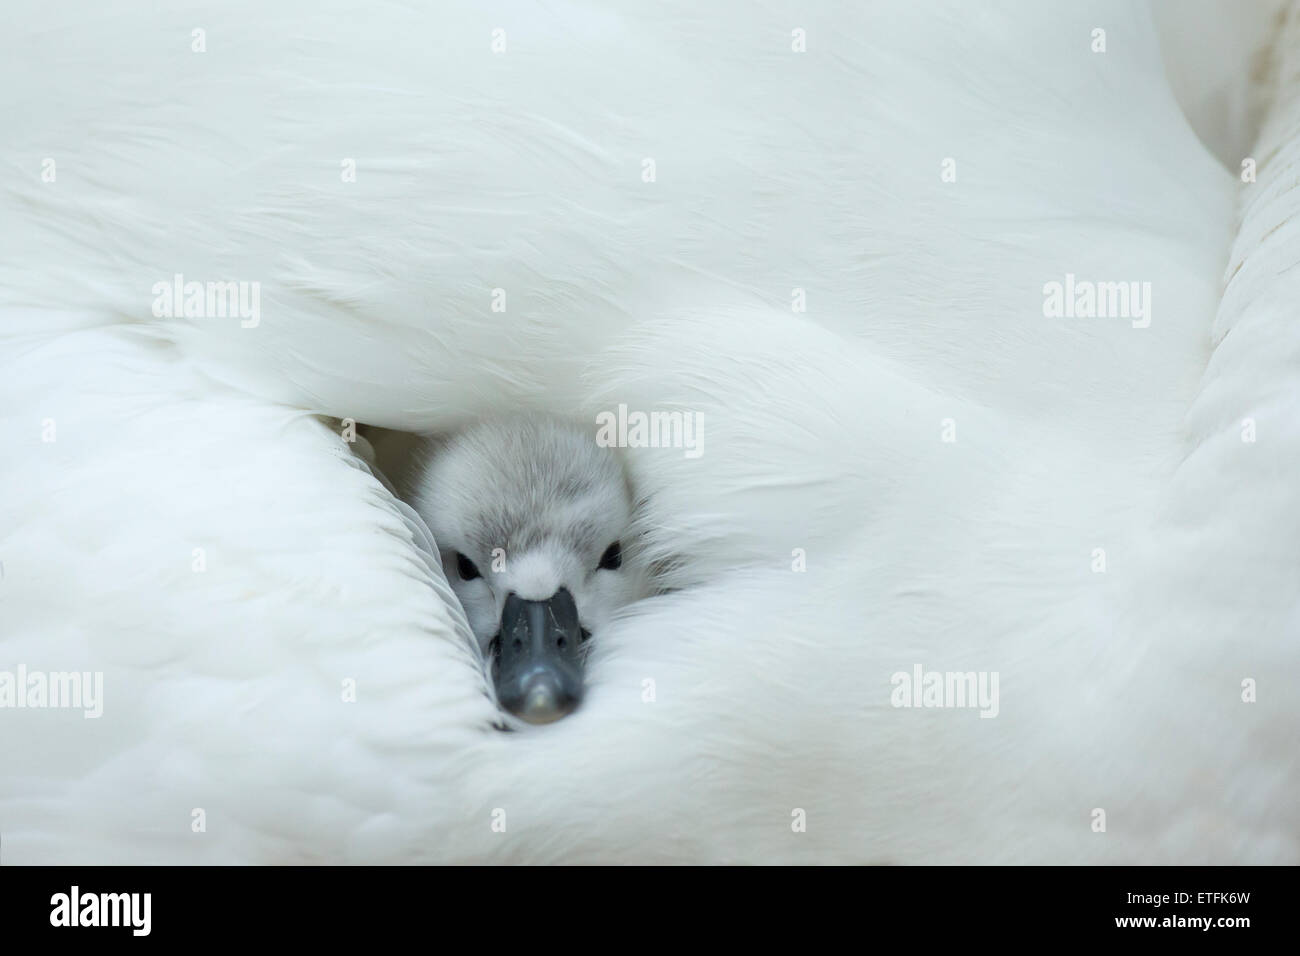 Cigno (Cygnus olor) cygnet sul nido, mentre la madre fornisce calore e protezione Foto Stock